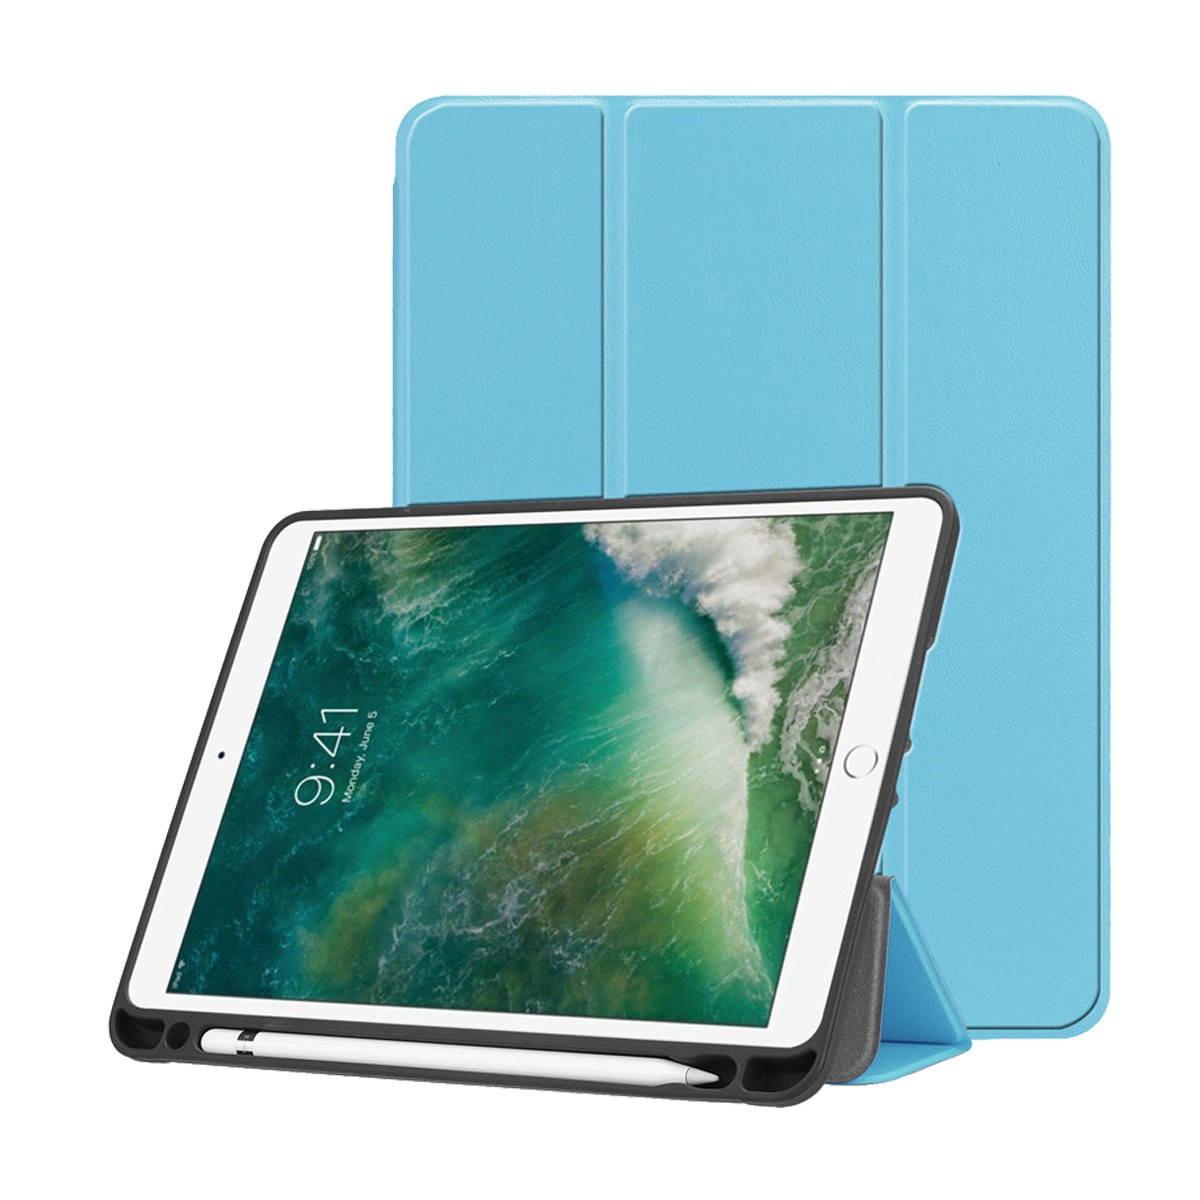 iPad 第9世代 ケース iPad mini 6 5 ケース iPad Air 5 4 3 2 ケース iPad Pro 10.5 第6 第7 第8 世代 カバー 手帳型 タッチペン収納 おしゃれ 耐衝撃 スタンド